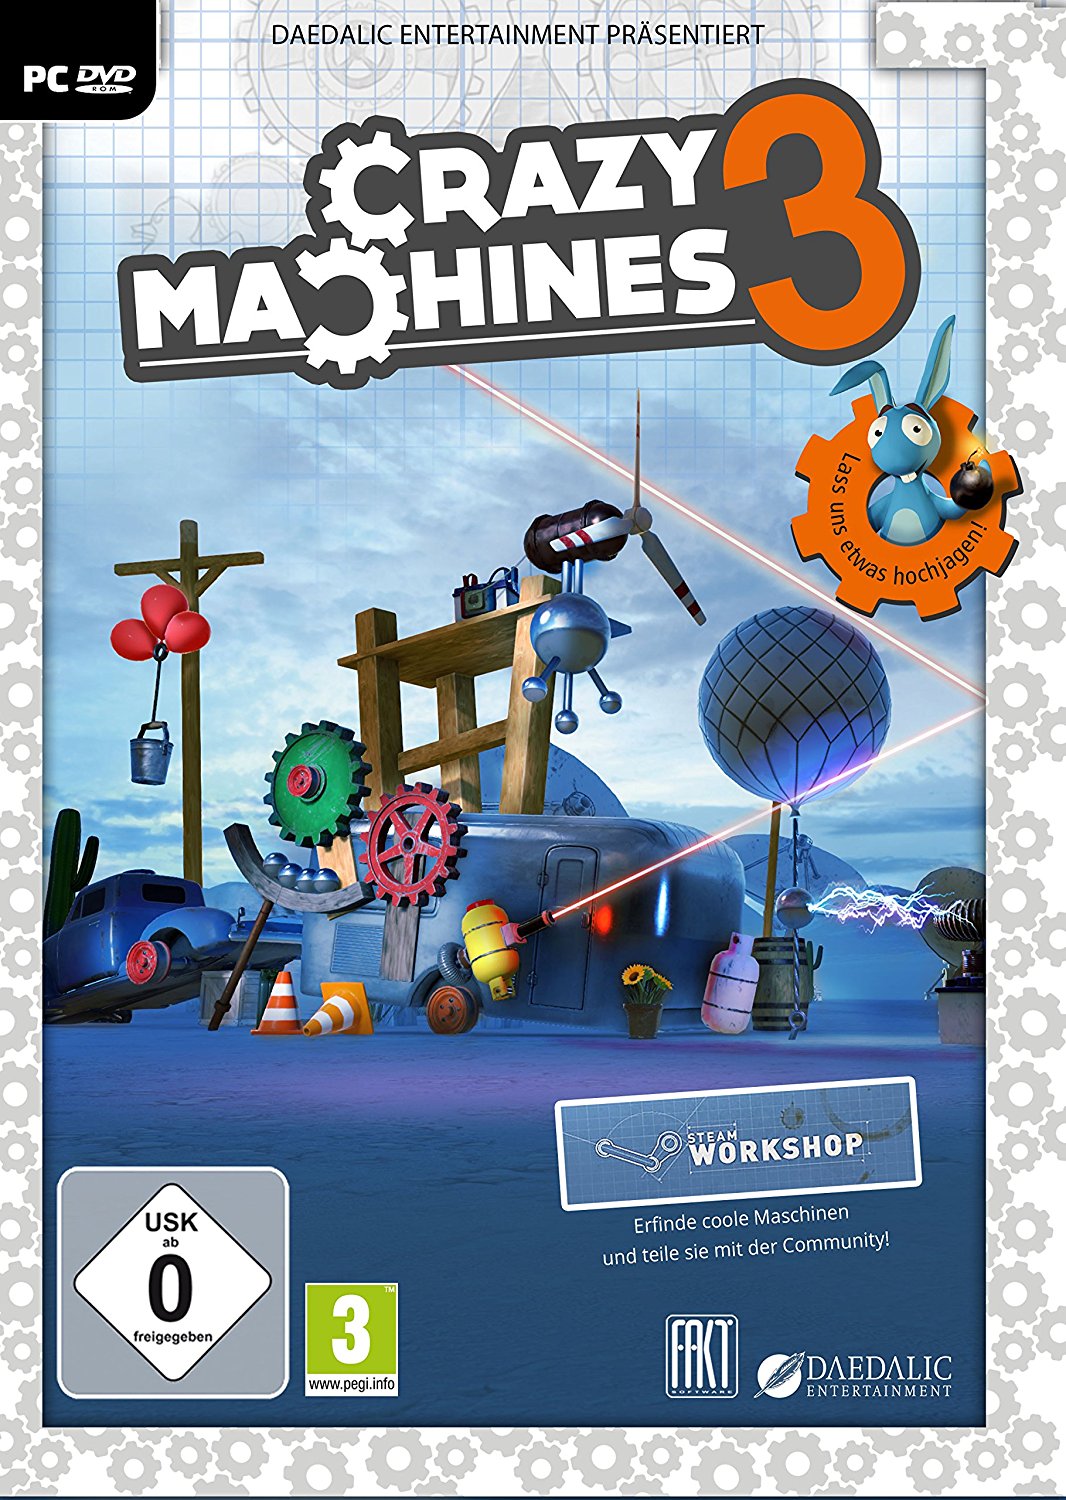 Cover: Eine durcheinandergewürfelte Ansammlung an Gegenständen wie Zahnräder, Gastanks, Stahlkugeln, ein Laser und verschiedene Ballons. Darüber steht "Crazy Machines 3"